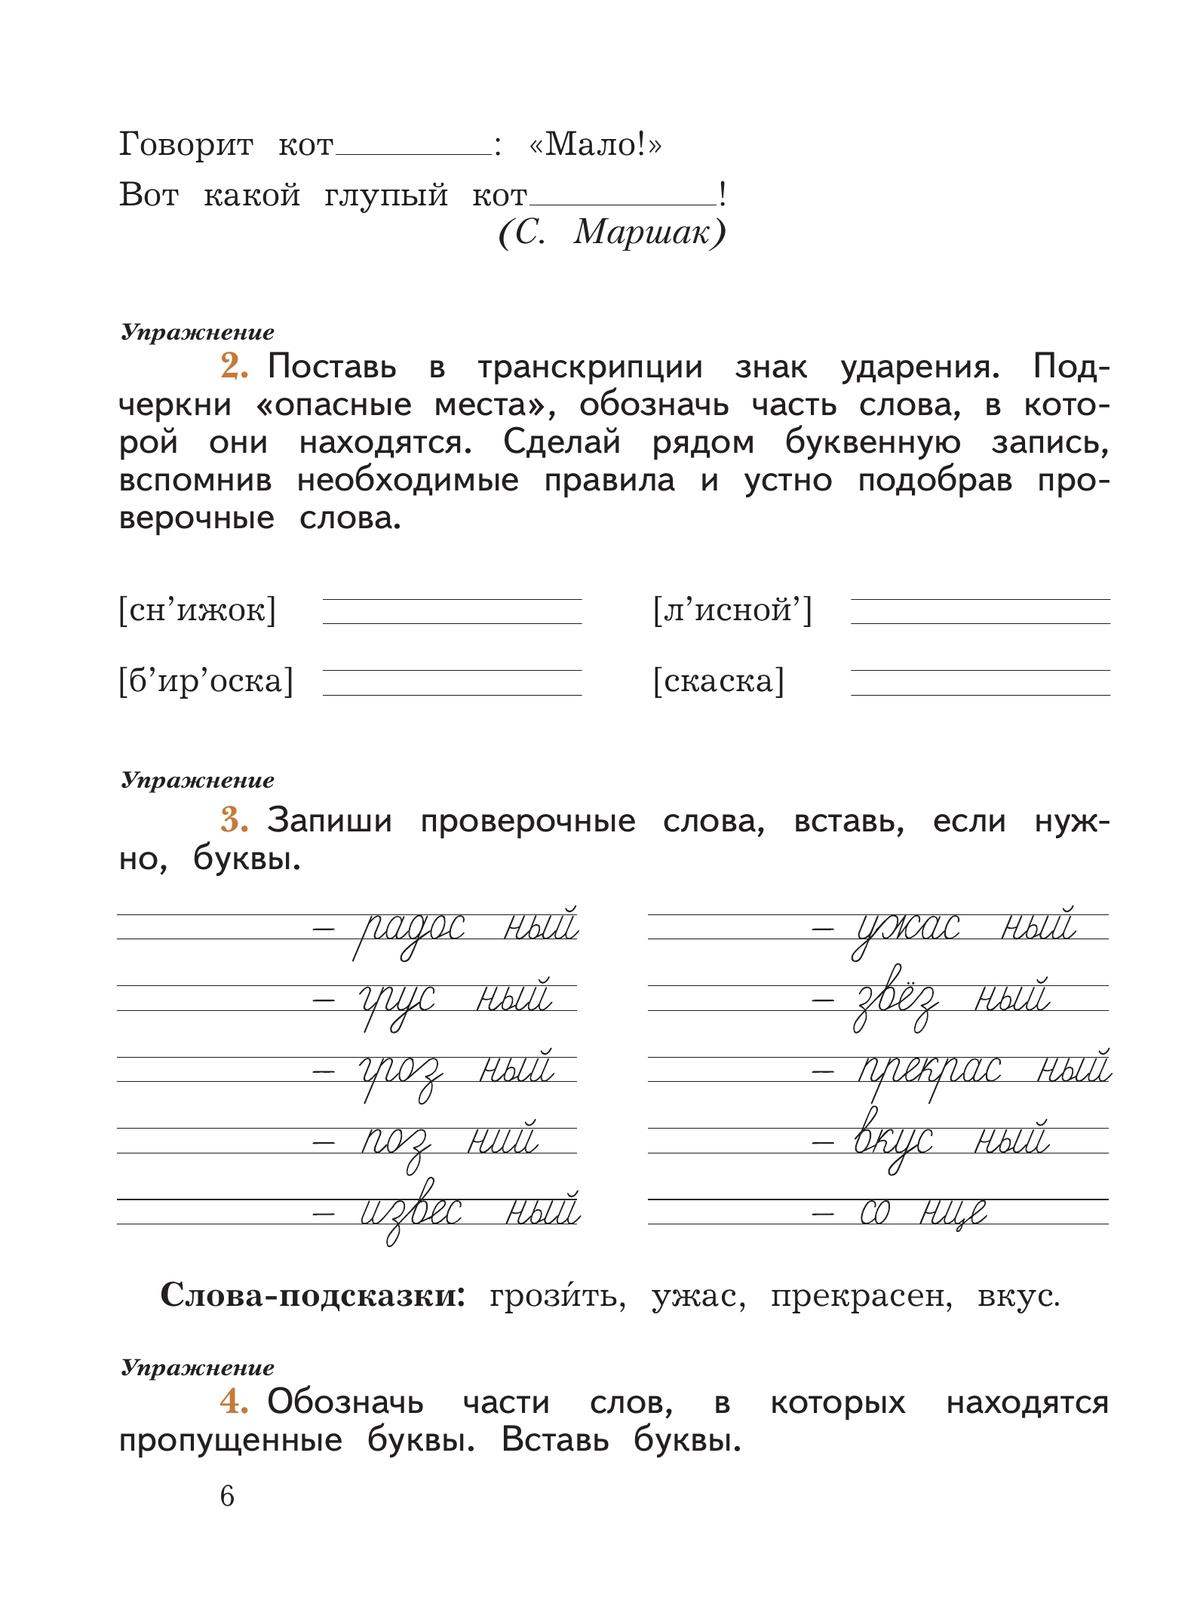 Русский язык. 2 класс. Пишем грамотно. Рабочая тетрадь. В 2 частях. Часть 2 3